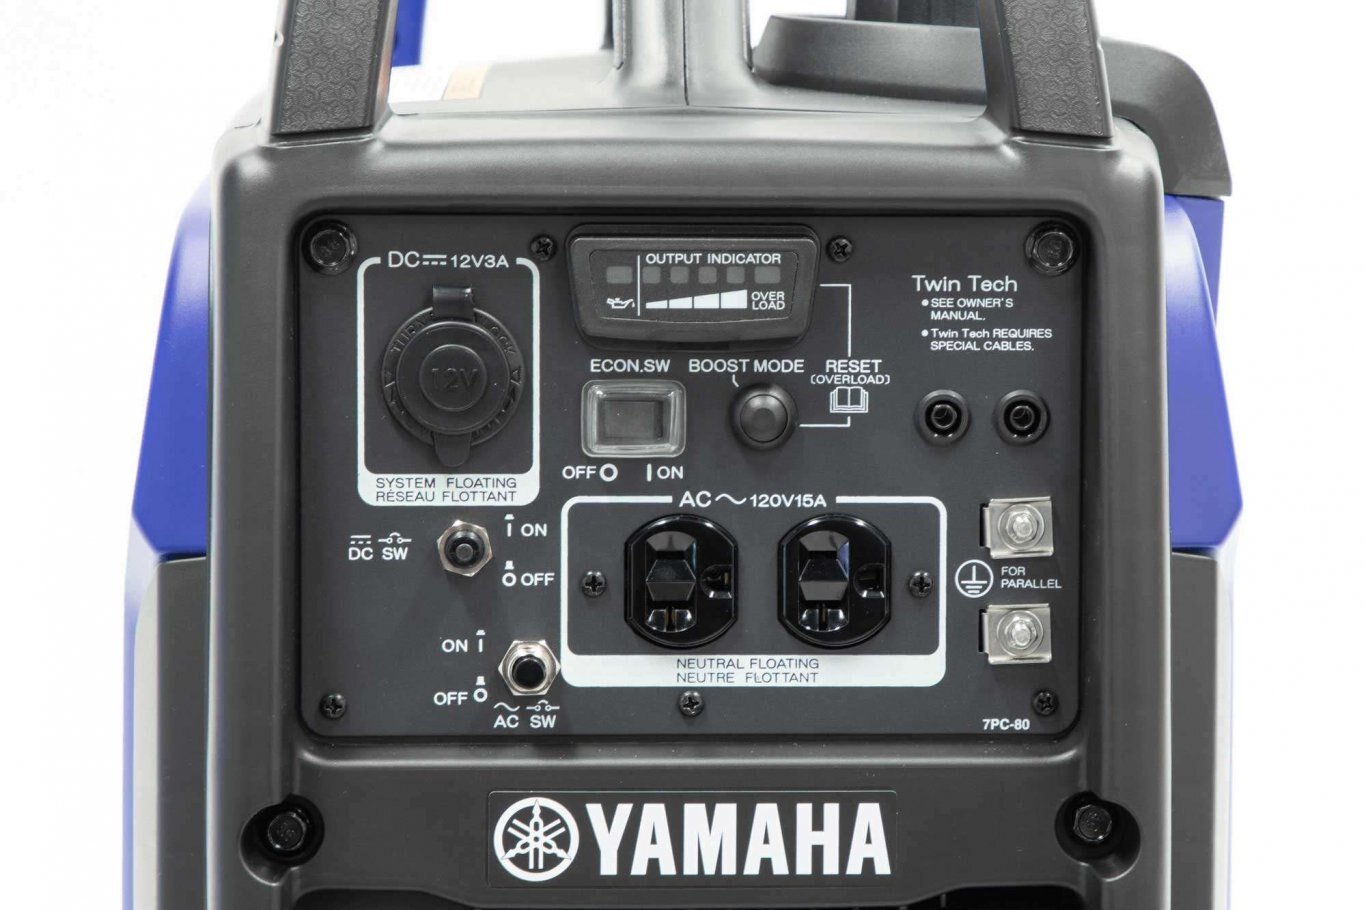 Yamaha EF2200IST INVERTER